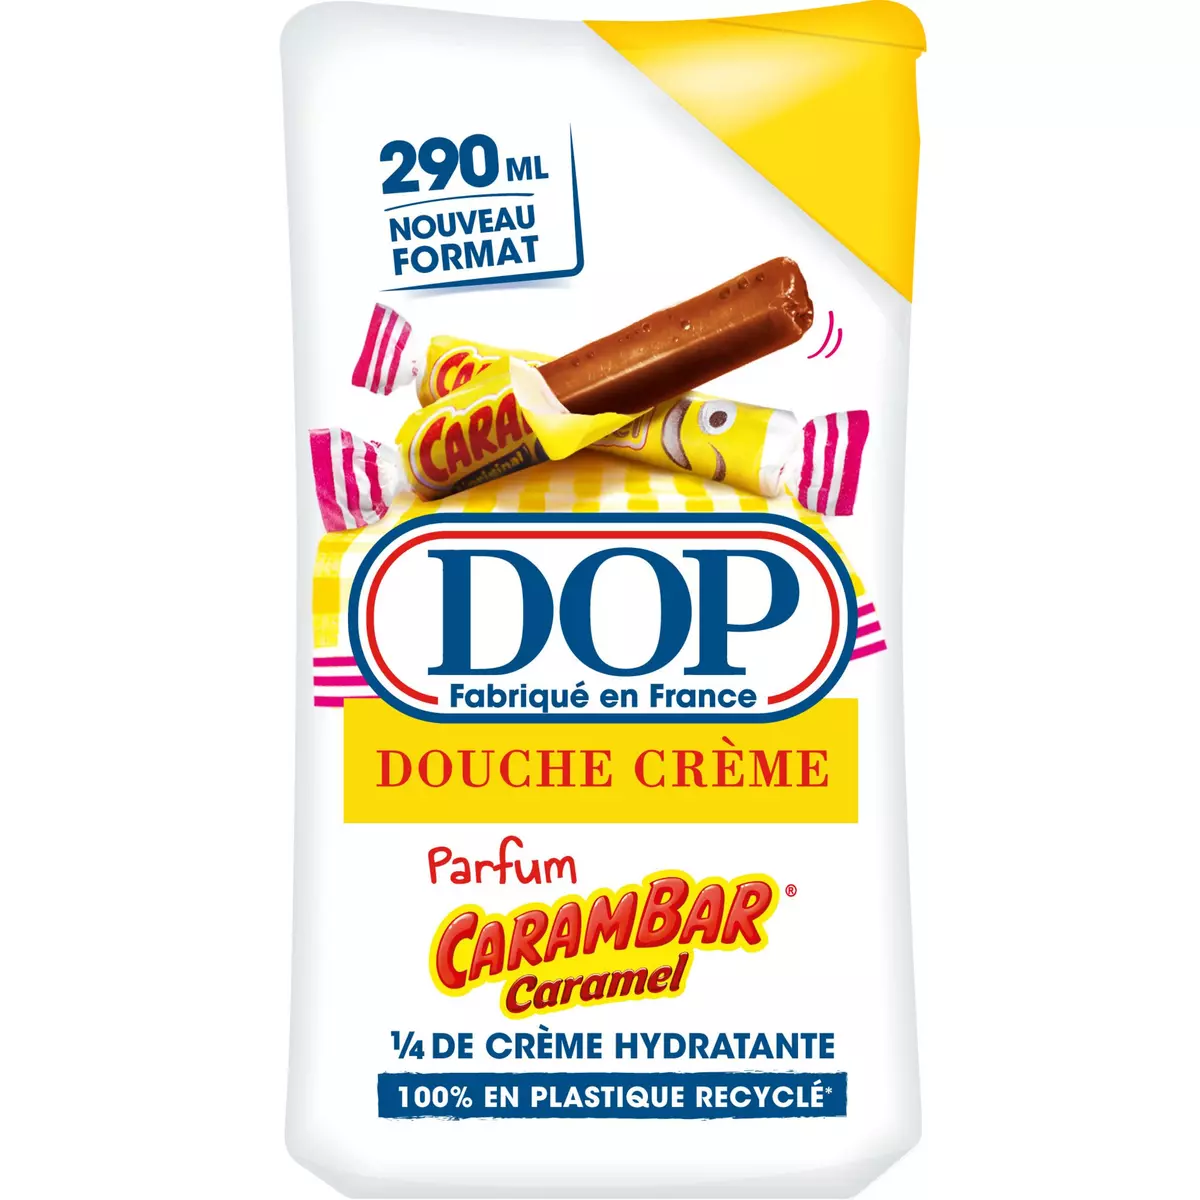 DOP Douche crème hydratante parfum carambar caramel 290ml